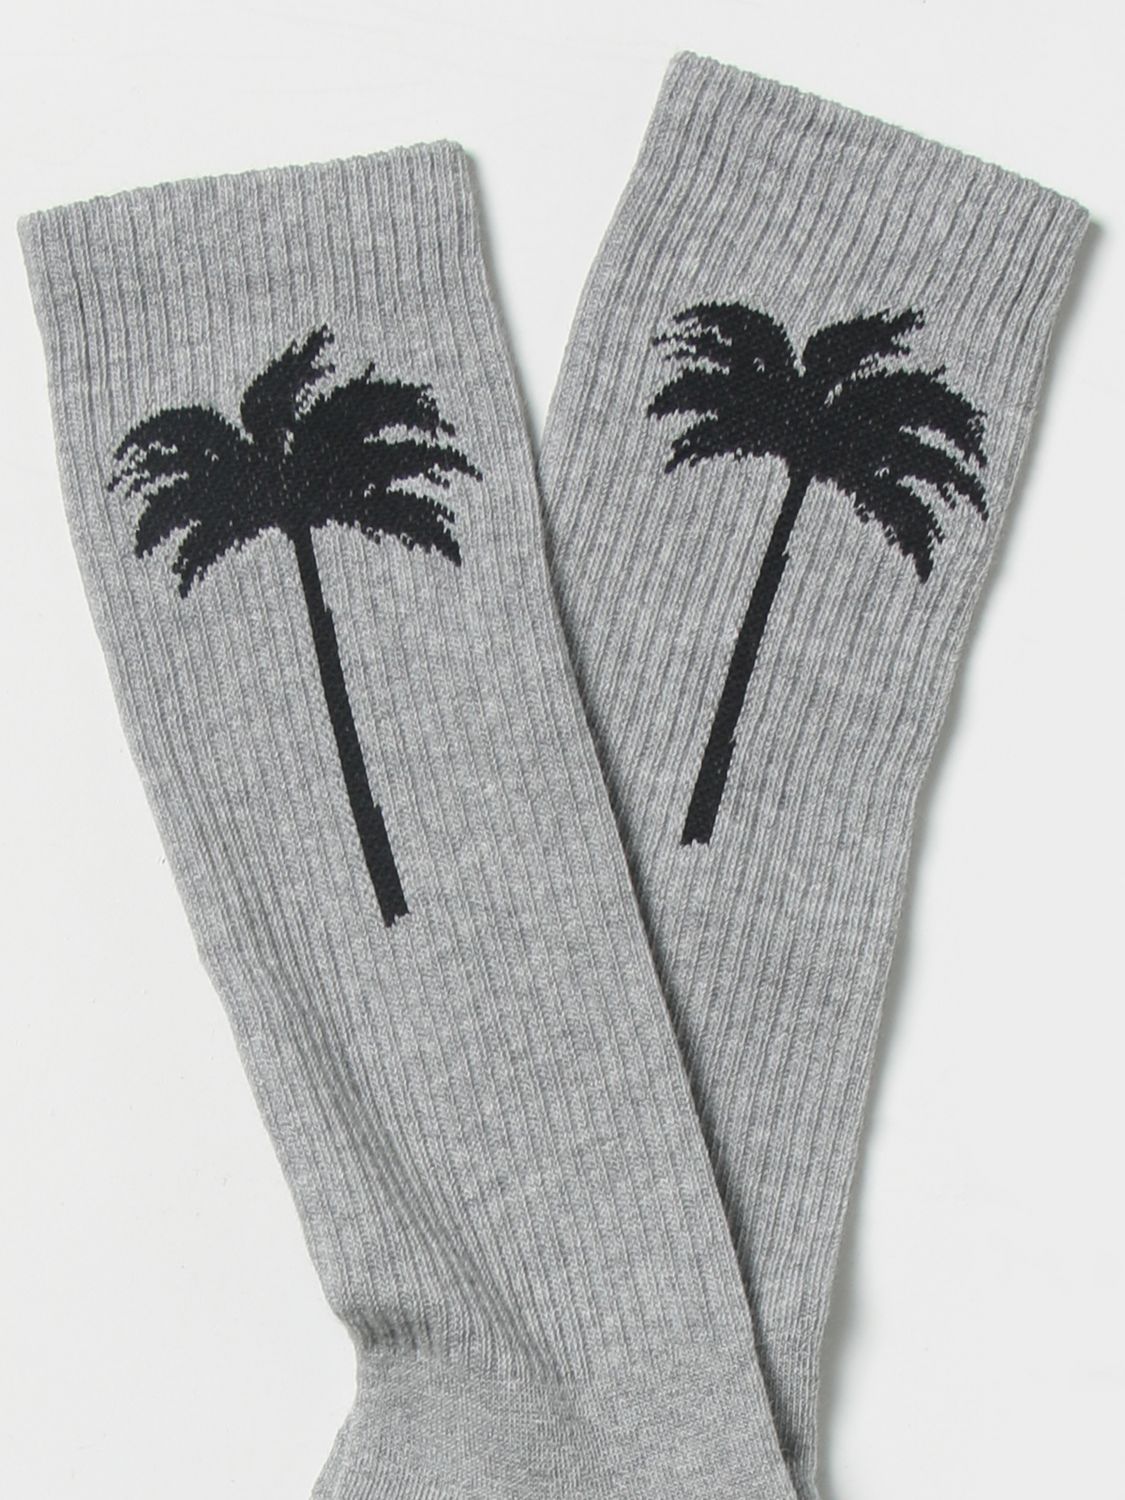 Socken Palm Angels: Palm Angels Herren Socken bunt 2